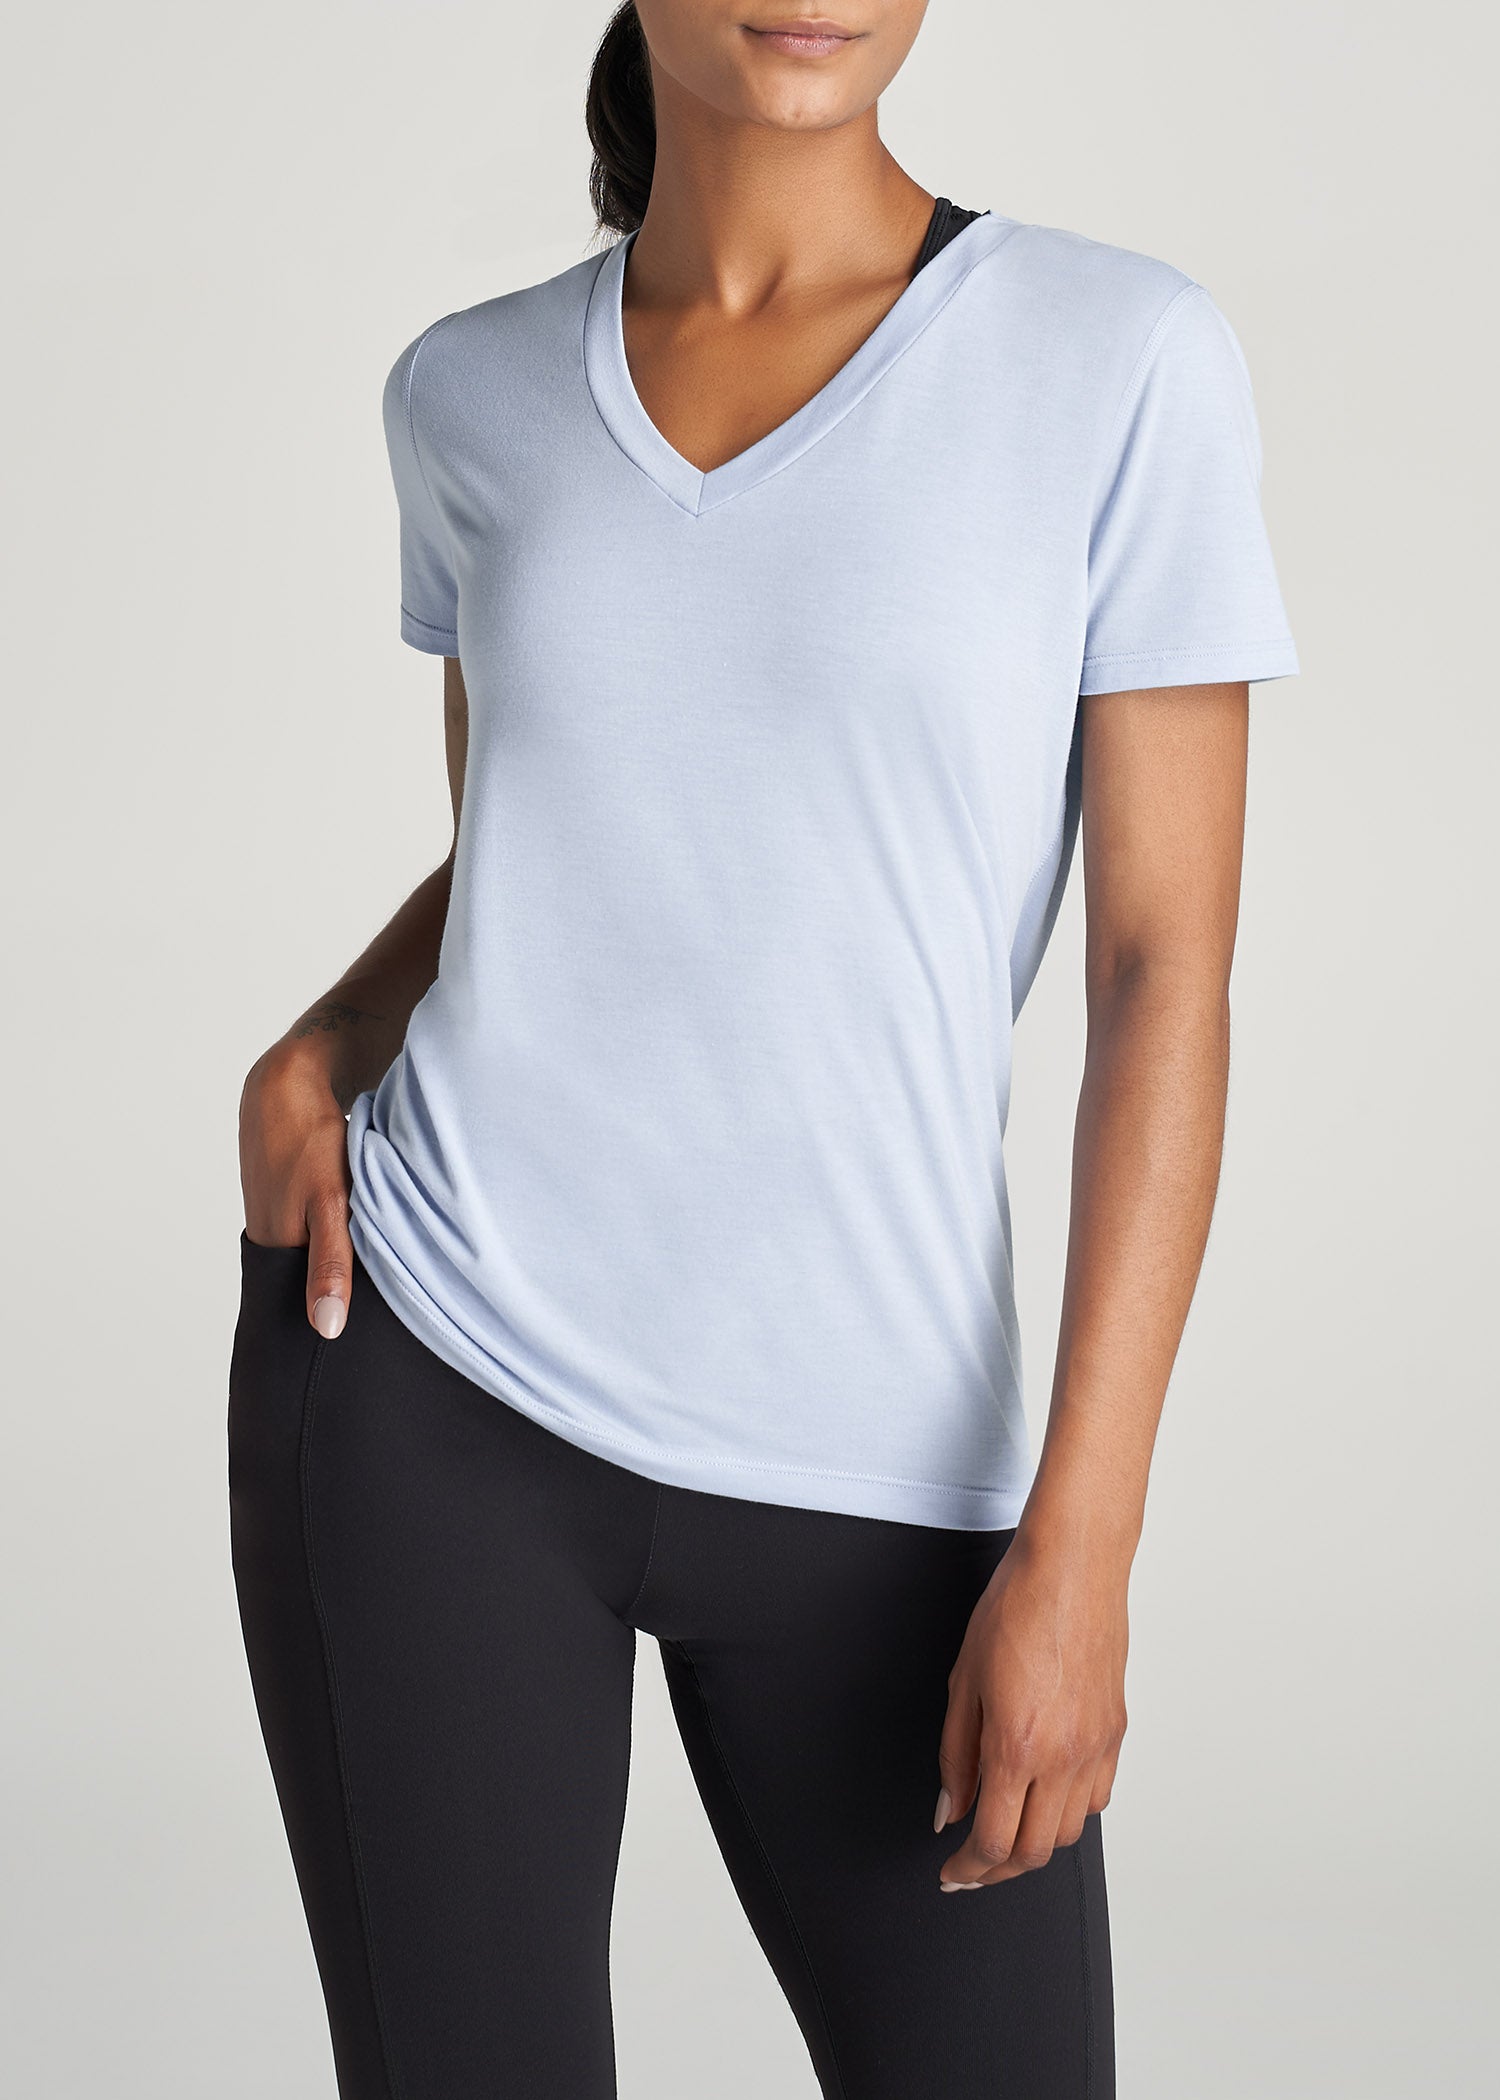 Women's Short Sleeve T-Shirts & Tops